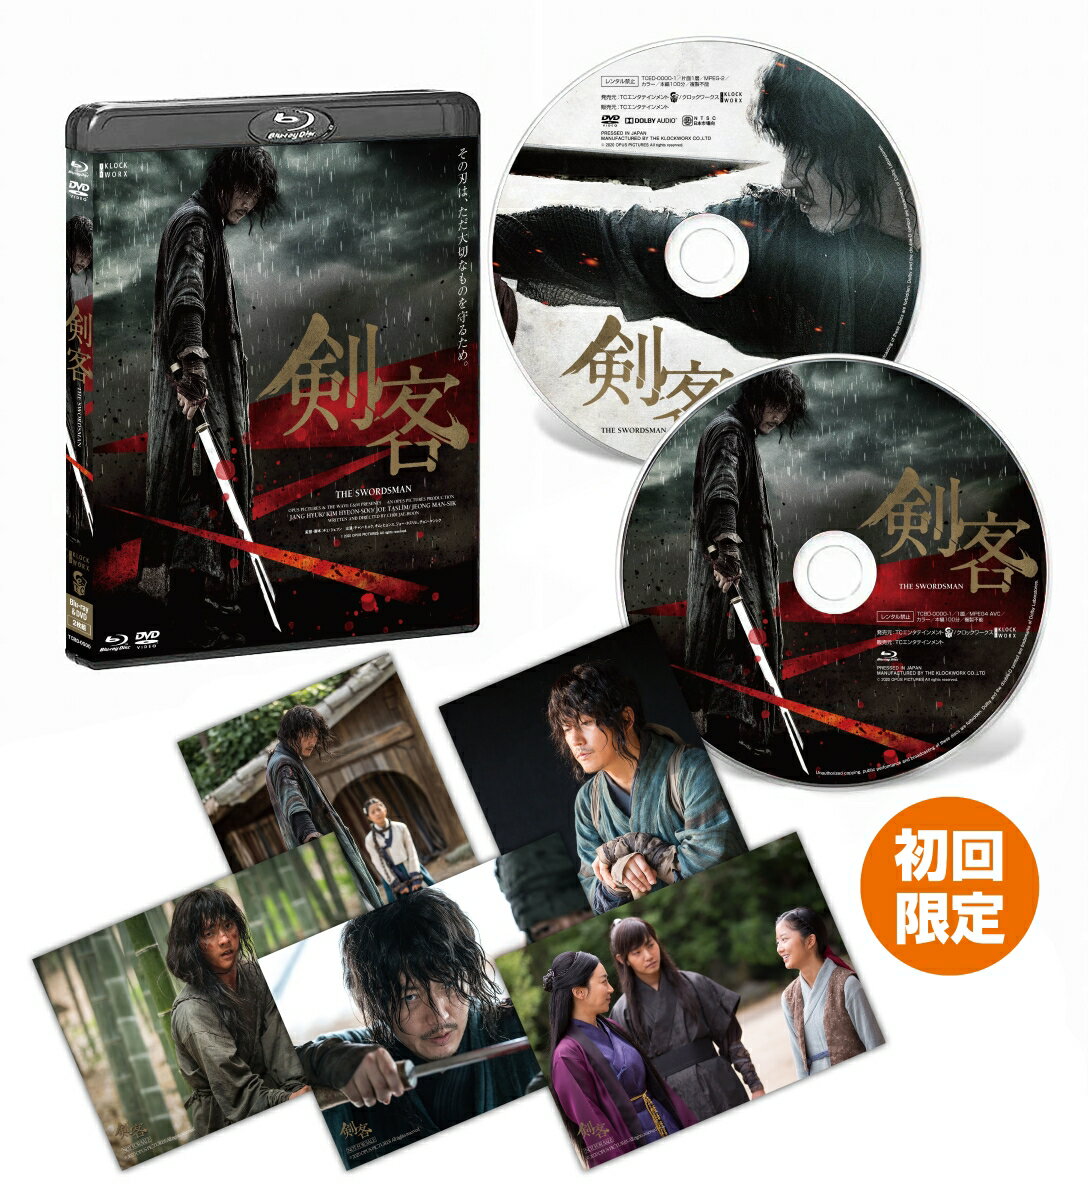 剣客 デラックス版(Blu-ray+DVDセット)【Blu-ray】 [ チャン・ヒョク ]